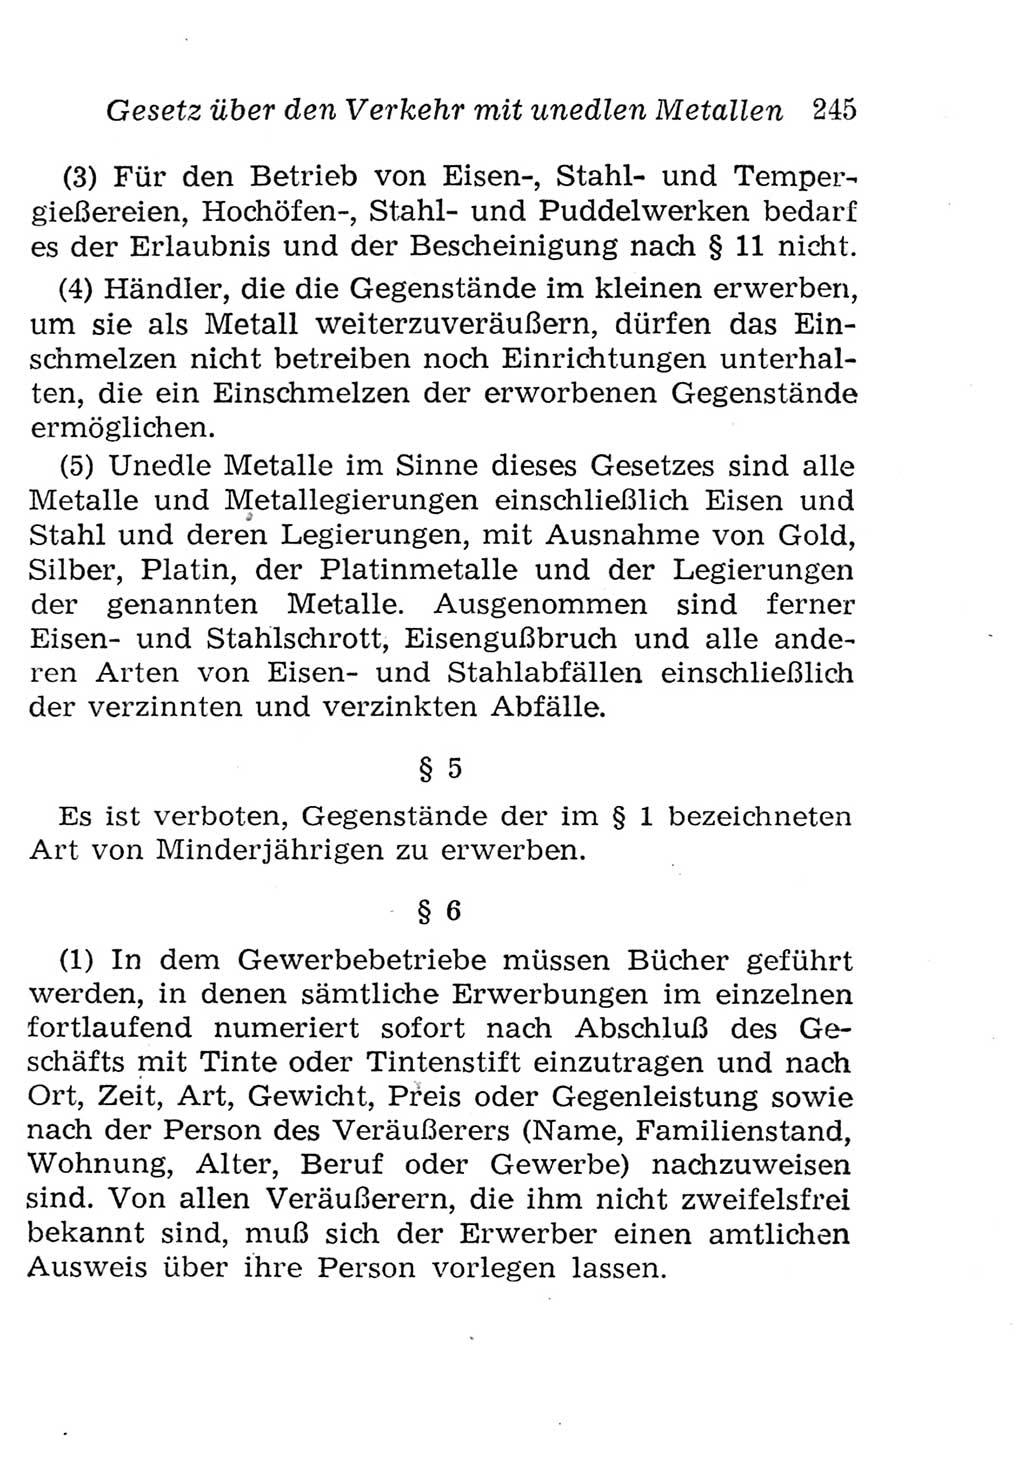 Strafgesetzbuch (StGB) und andere Strafgesetze [Deutsche Demokratische Republik (DDR)] 1957, Seite 245 (StGB Strafges. DDR 1957, S. 245)